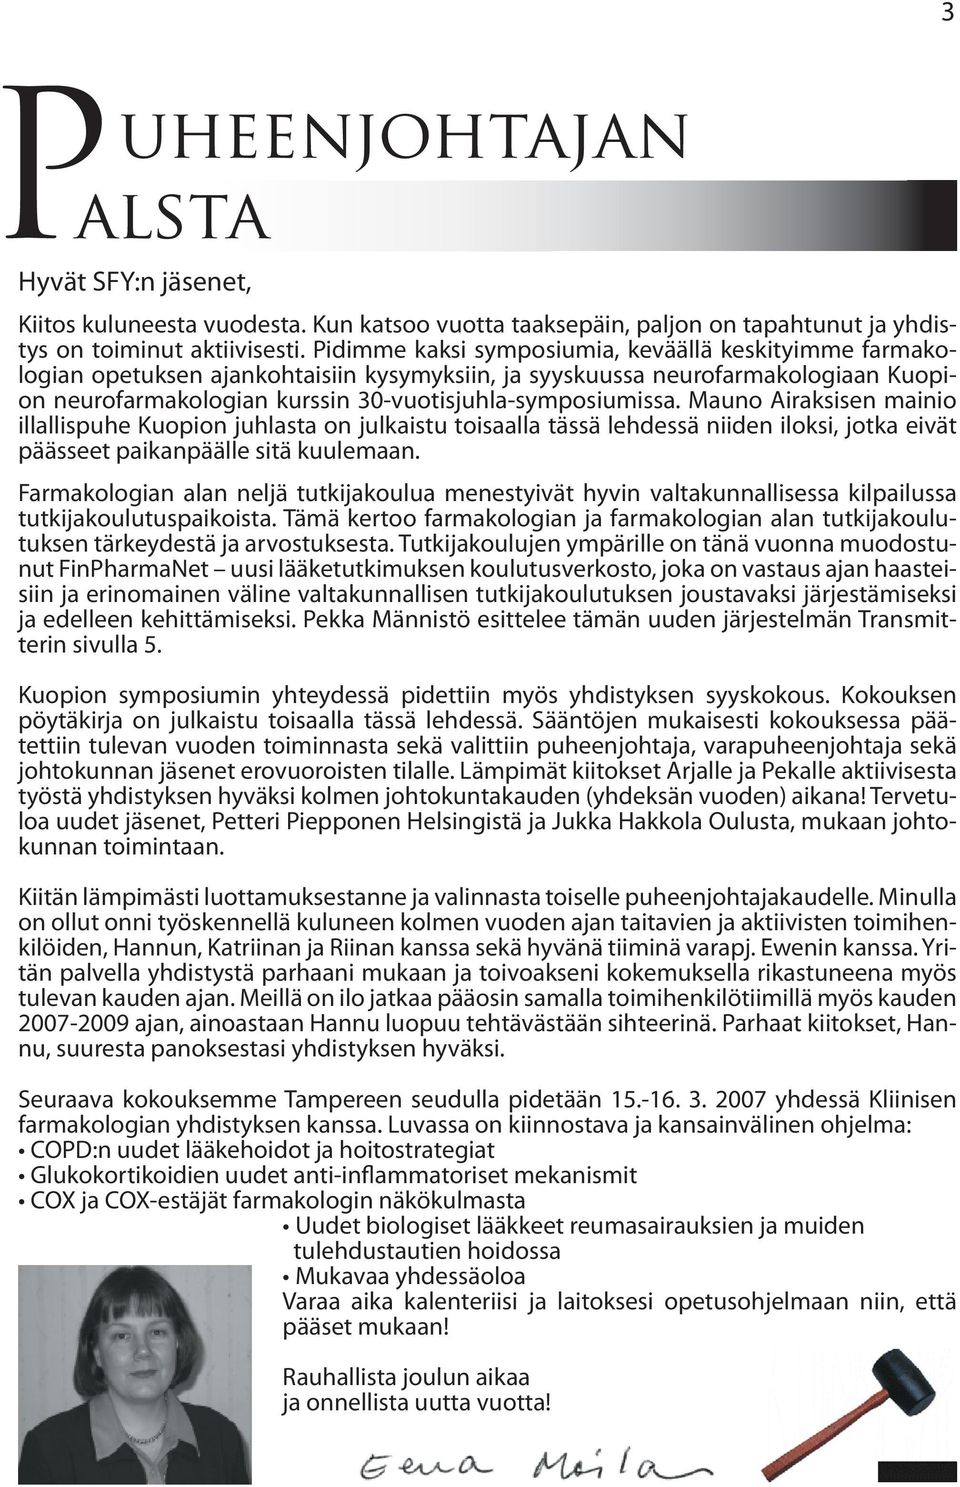 Mauno Airaksisen mainio illallispuhe Kuopion juhlasta on julkaistu toisaalla tässä lehdessä niiden iloksi, jotka eivät päässeet paikanpäälle sitä kuulemaan.